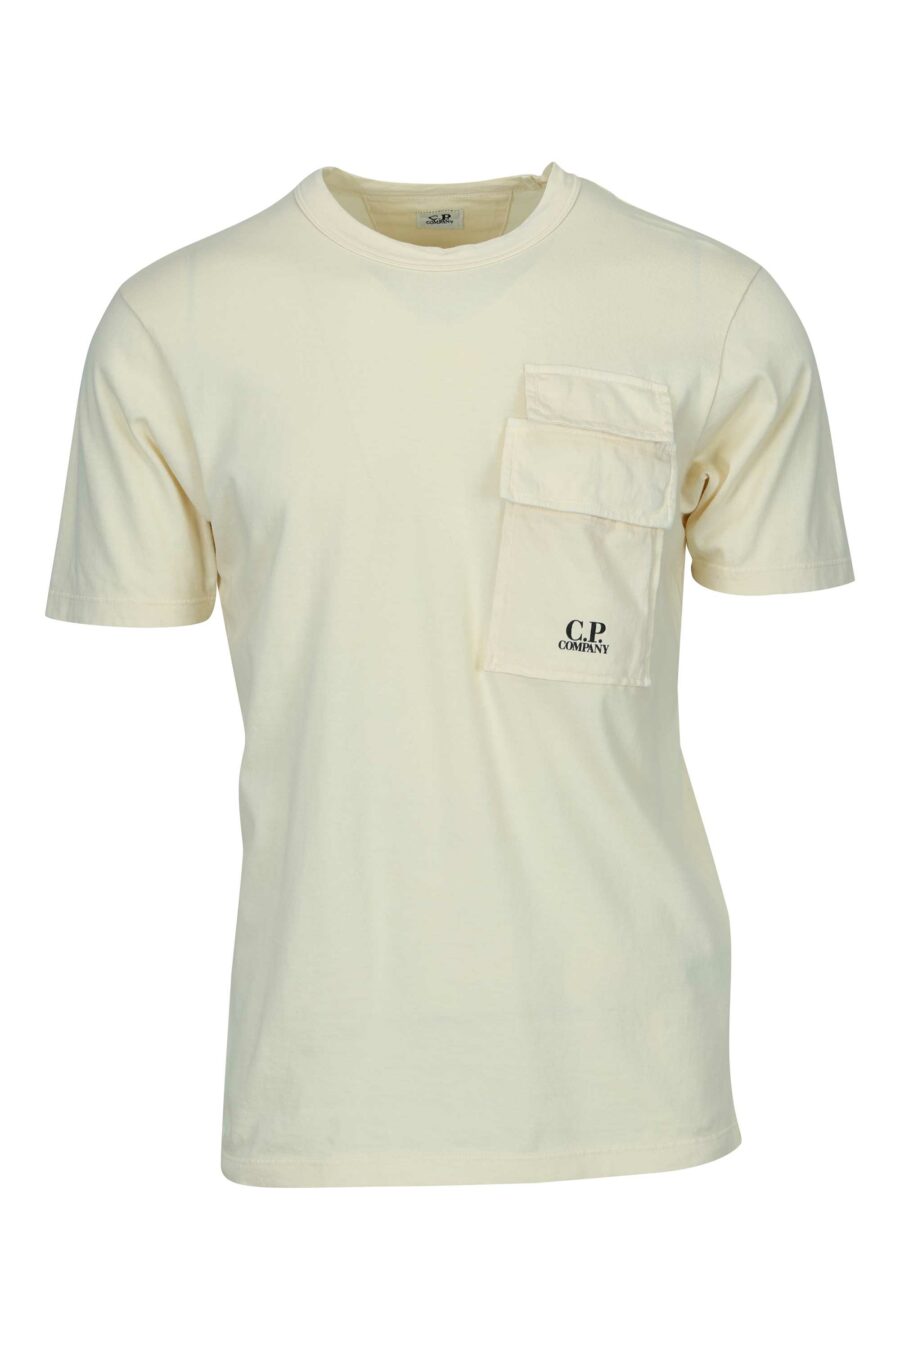 Beigefarbenes T-Shirt mit Taschen und Mini-Logo "cp" - 7620943766882